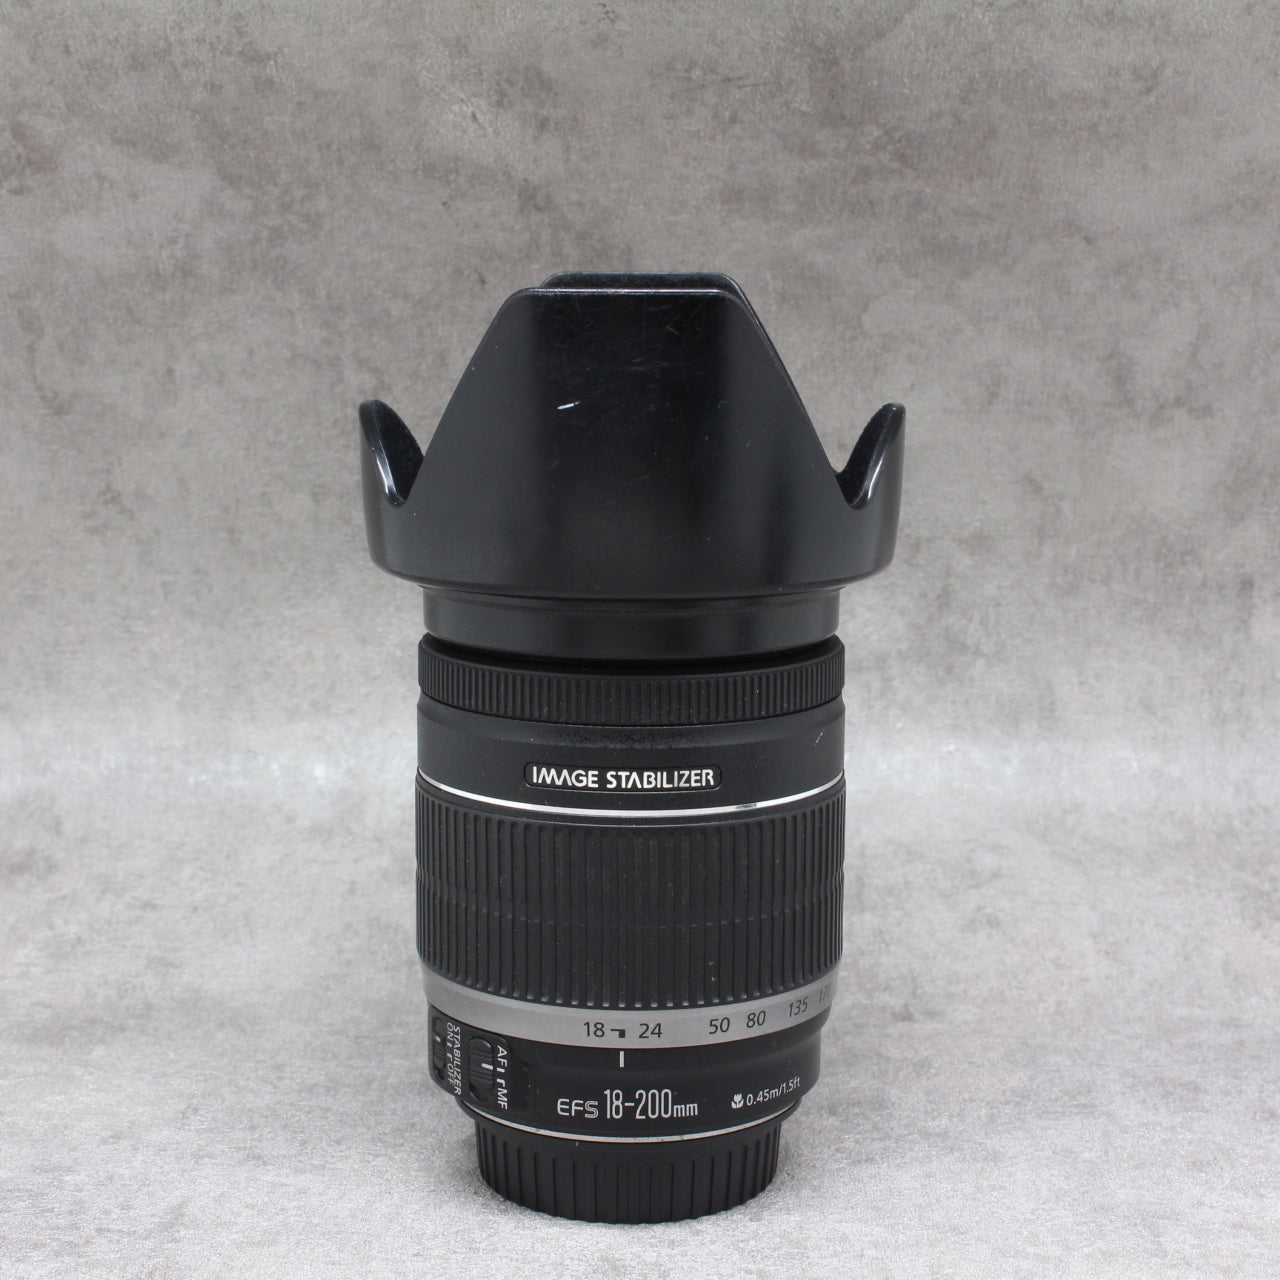 Canon lens EFS 18-200mm 0.45m 1.5ft - レンズ(ズーム)